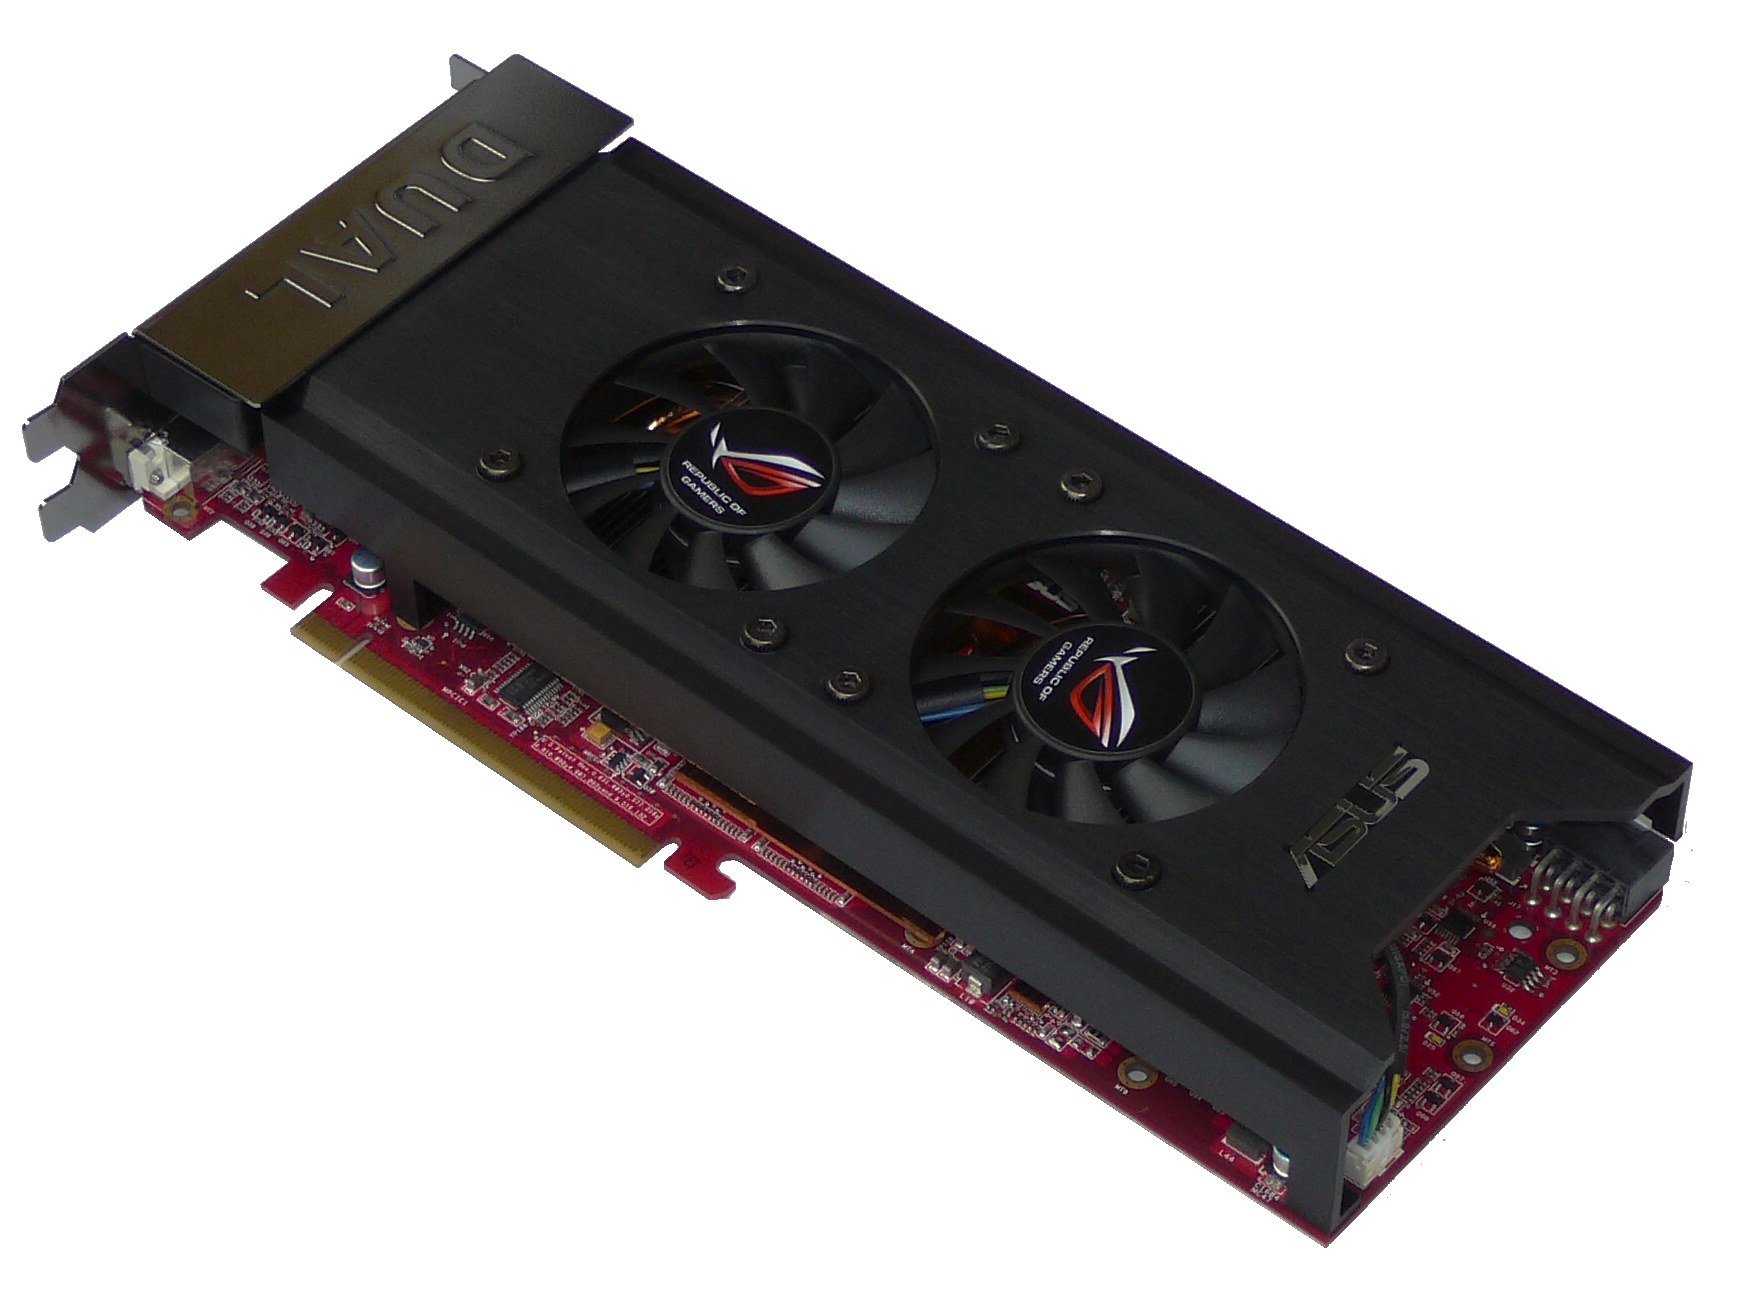 Radeon HD 3870X2 1GB - nový hráč v high-endu